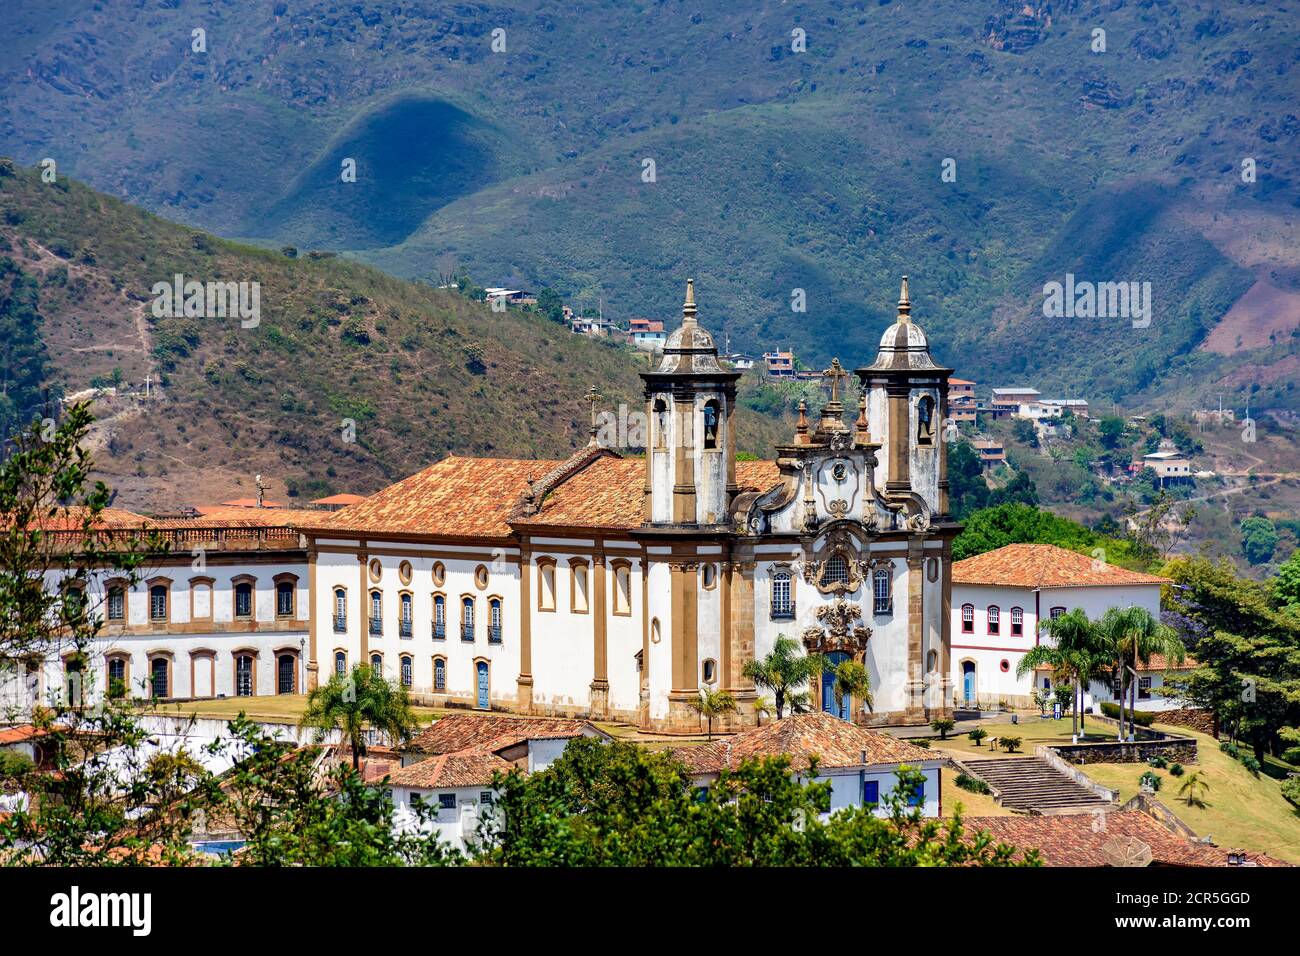 Ansicht der historischen Kirche aus dem 18. Jahrhundert in Kolonialarchitektur in der Stadt Ouro Preto in Minas Gerais, Brasilien mit Hügeln im Hintergrund Stockfoto